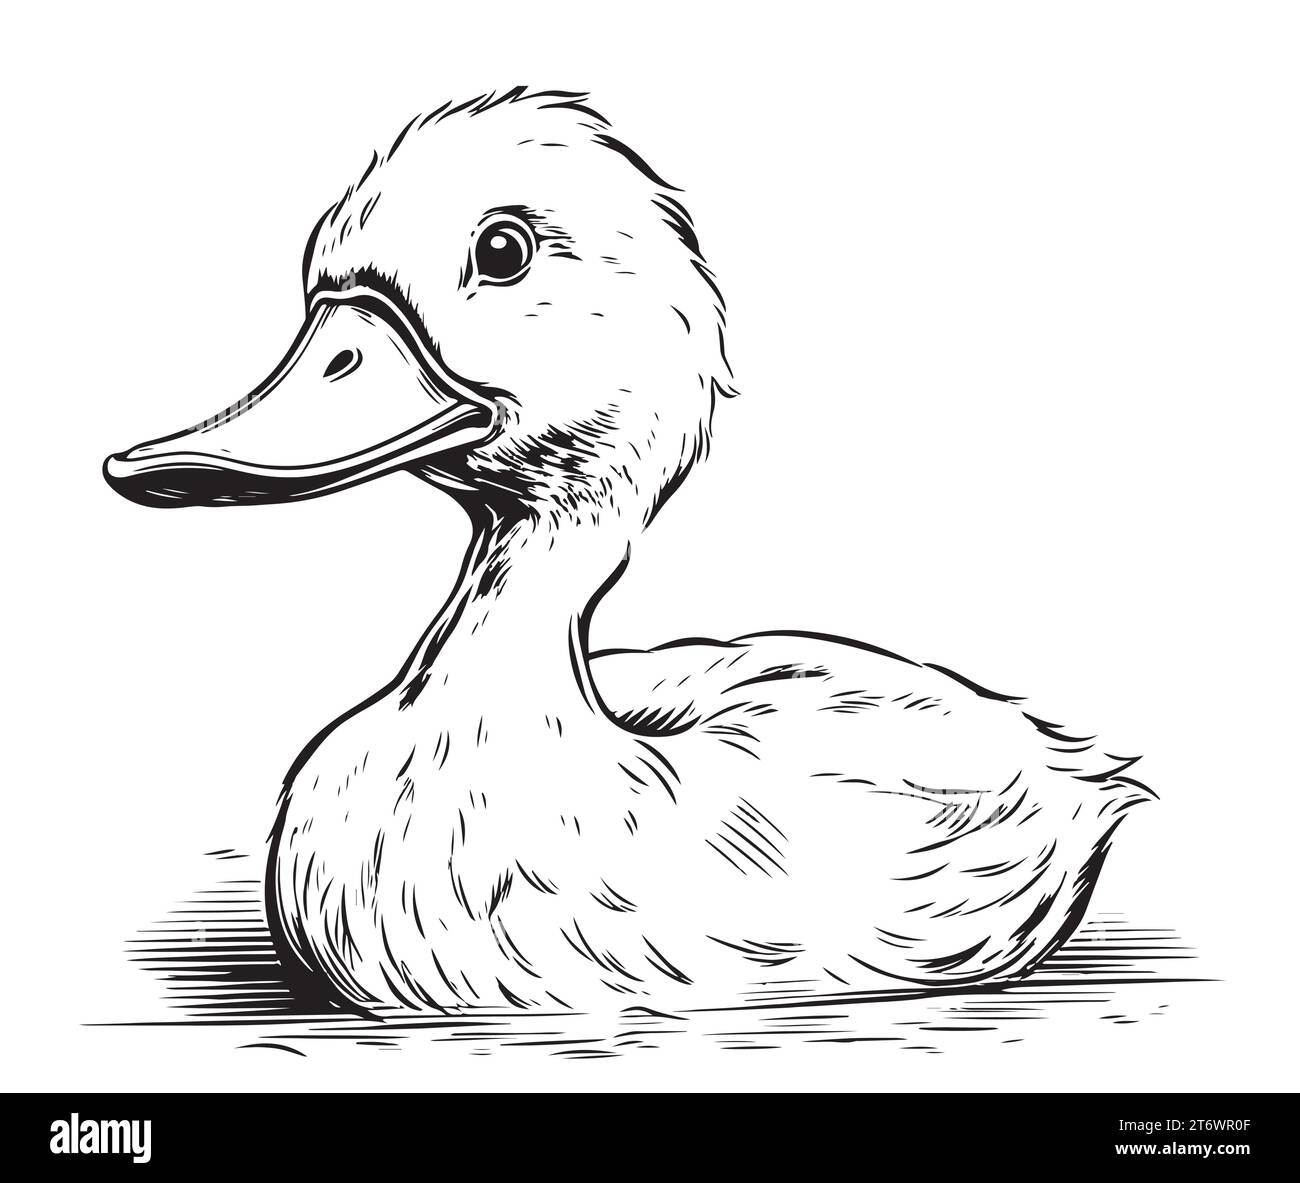 Croquis de natation de caneton dessiné à la main illustration vectorielle chasse aux oiseaux Illustration de Vecteur